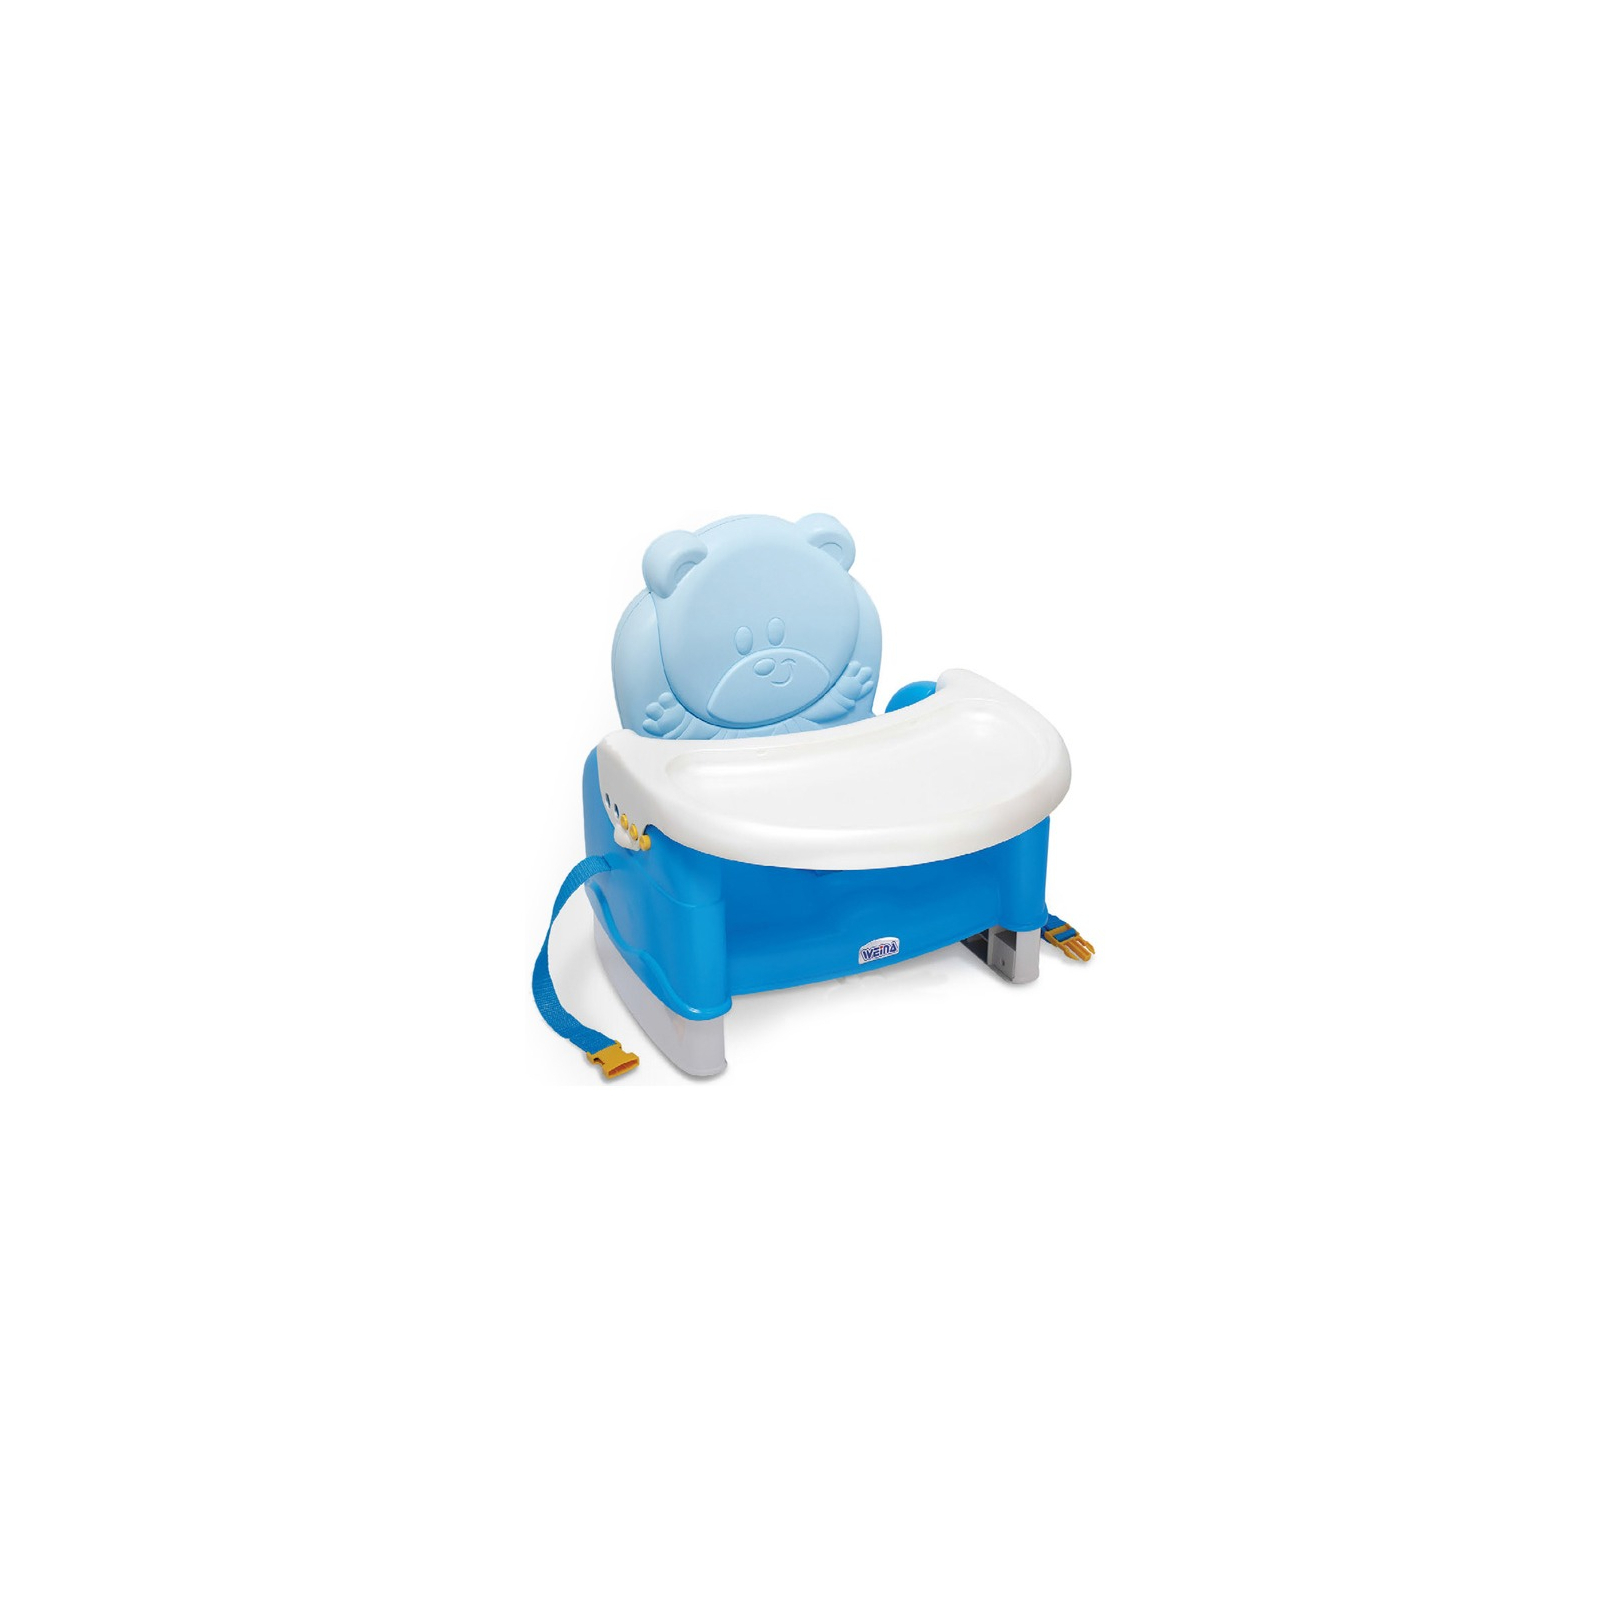 Стілець для годування Weina бустер Teddy Bear блакитний (4019.01) зображення 3